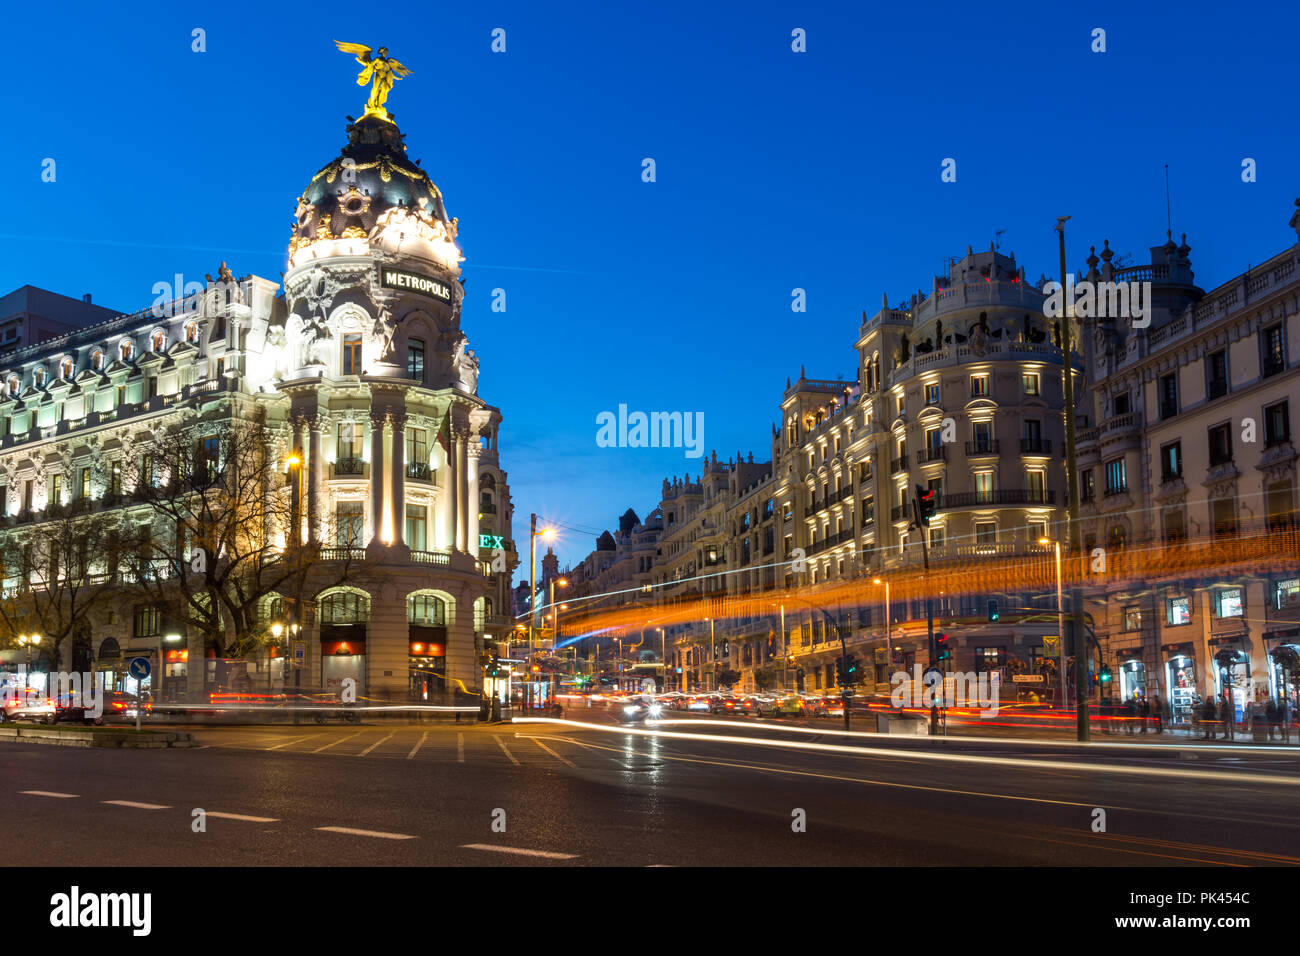 Restoration of the Metropolis Building in Madrid, Spain · Free